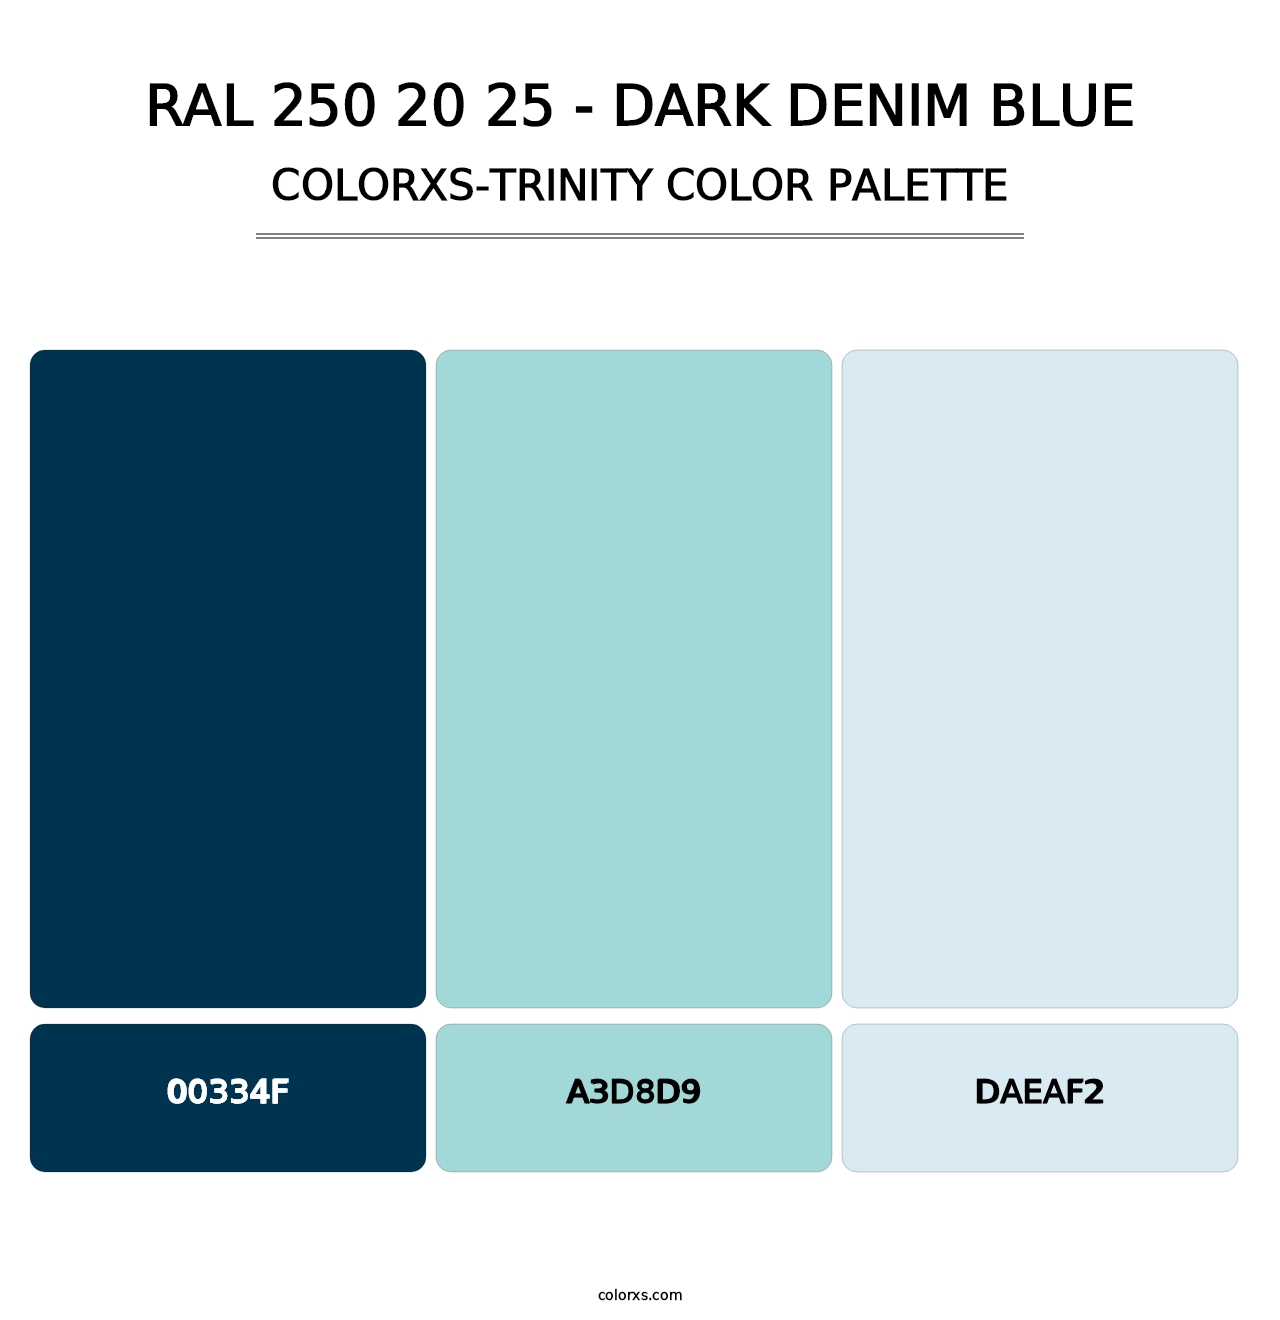 RAL 250 20 25 - Dark Denim Blue - Colorxs Trinity Palette